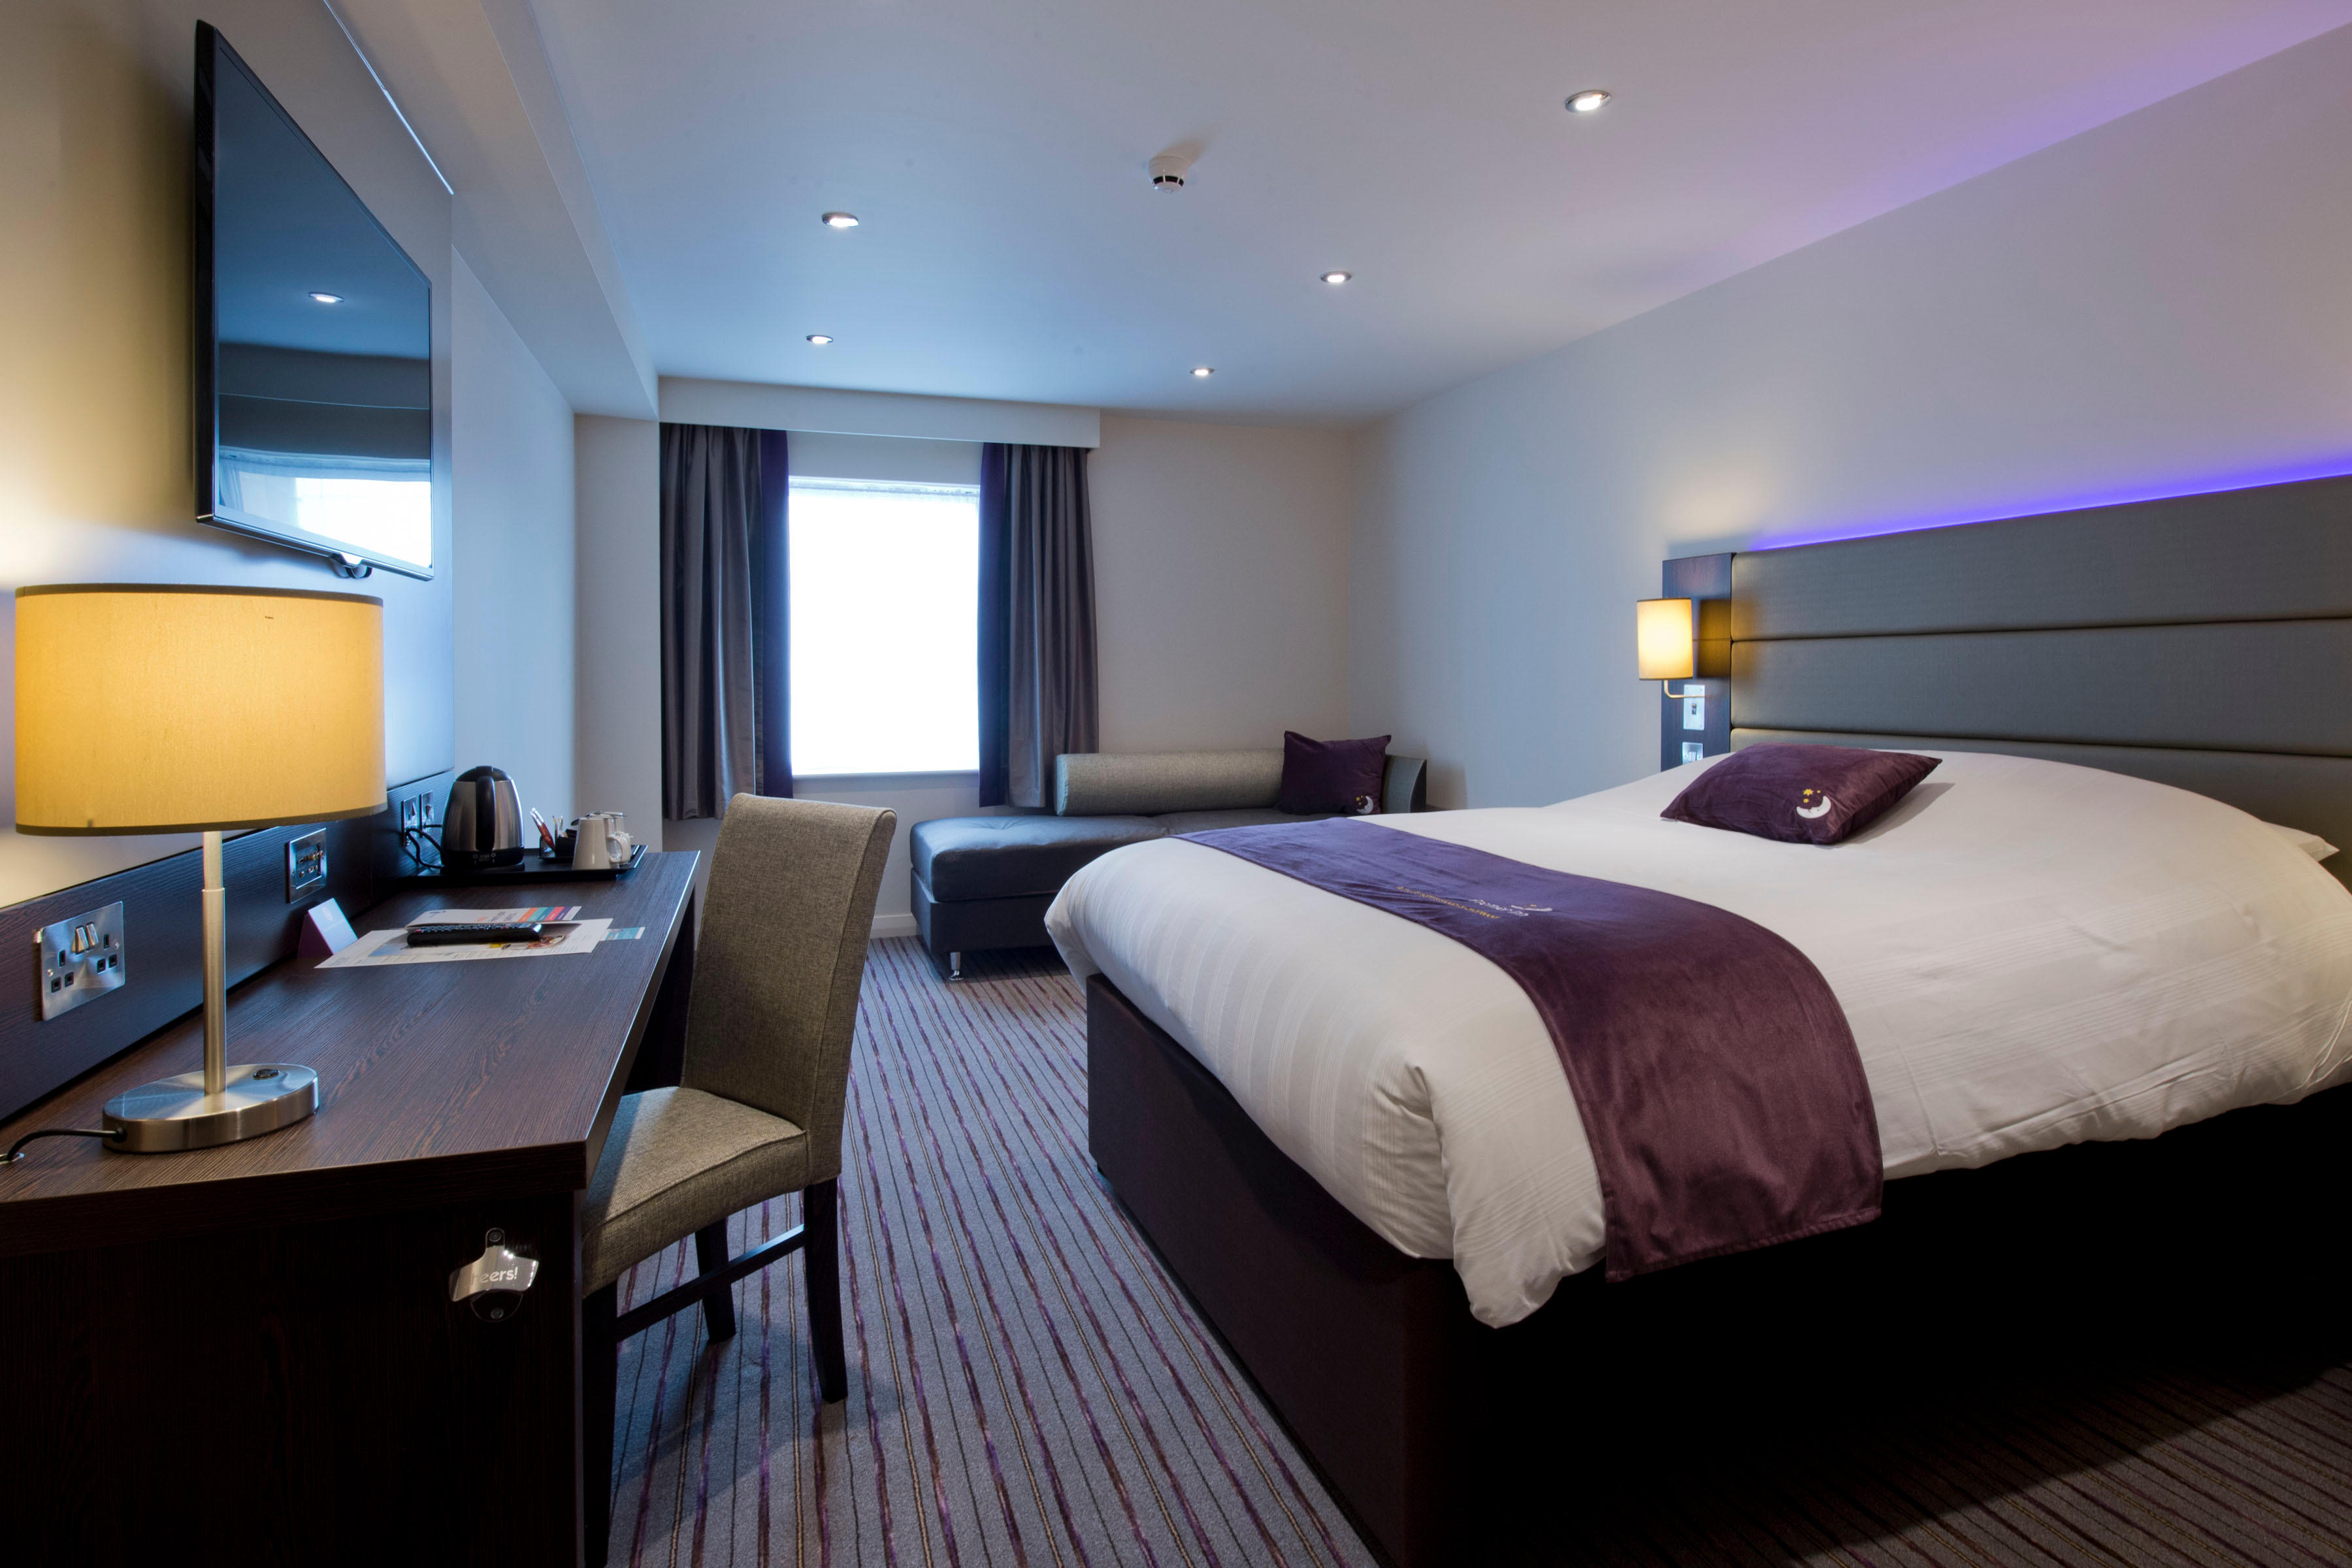 Premier Inn bedroom Premier Inn London Orpington hotel Orpington 03332 346591